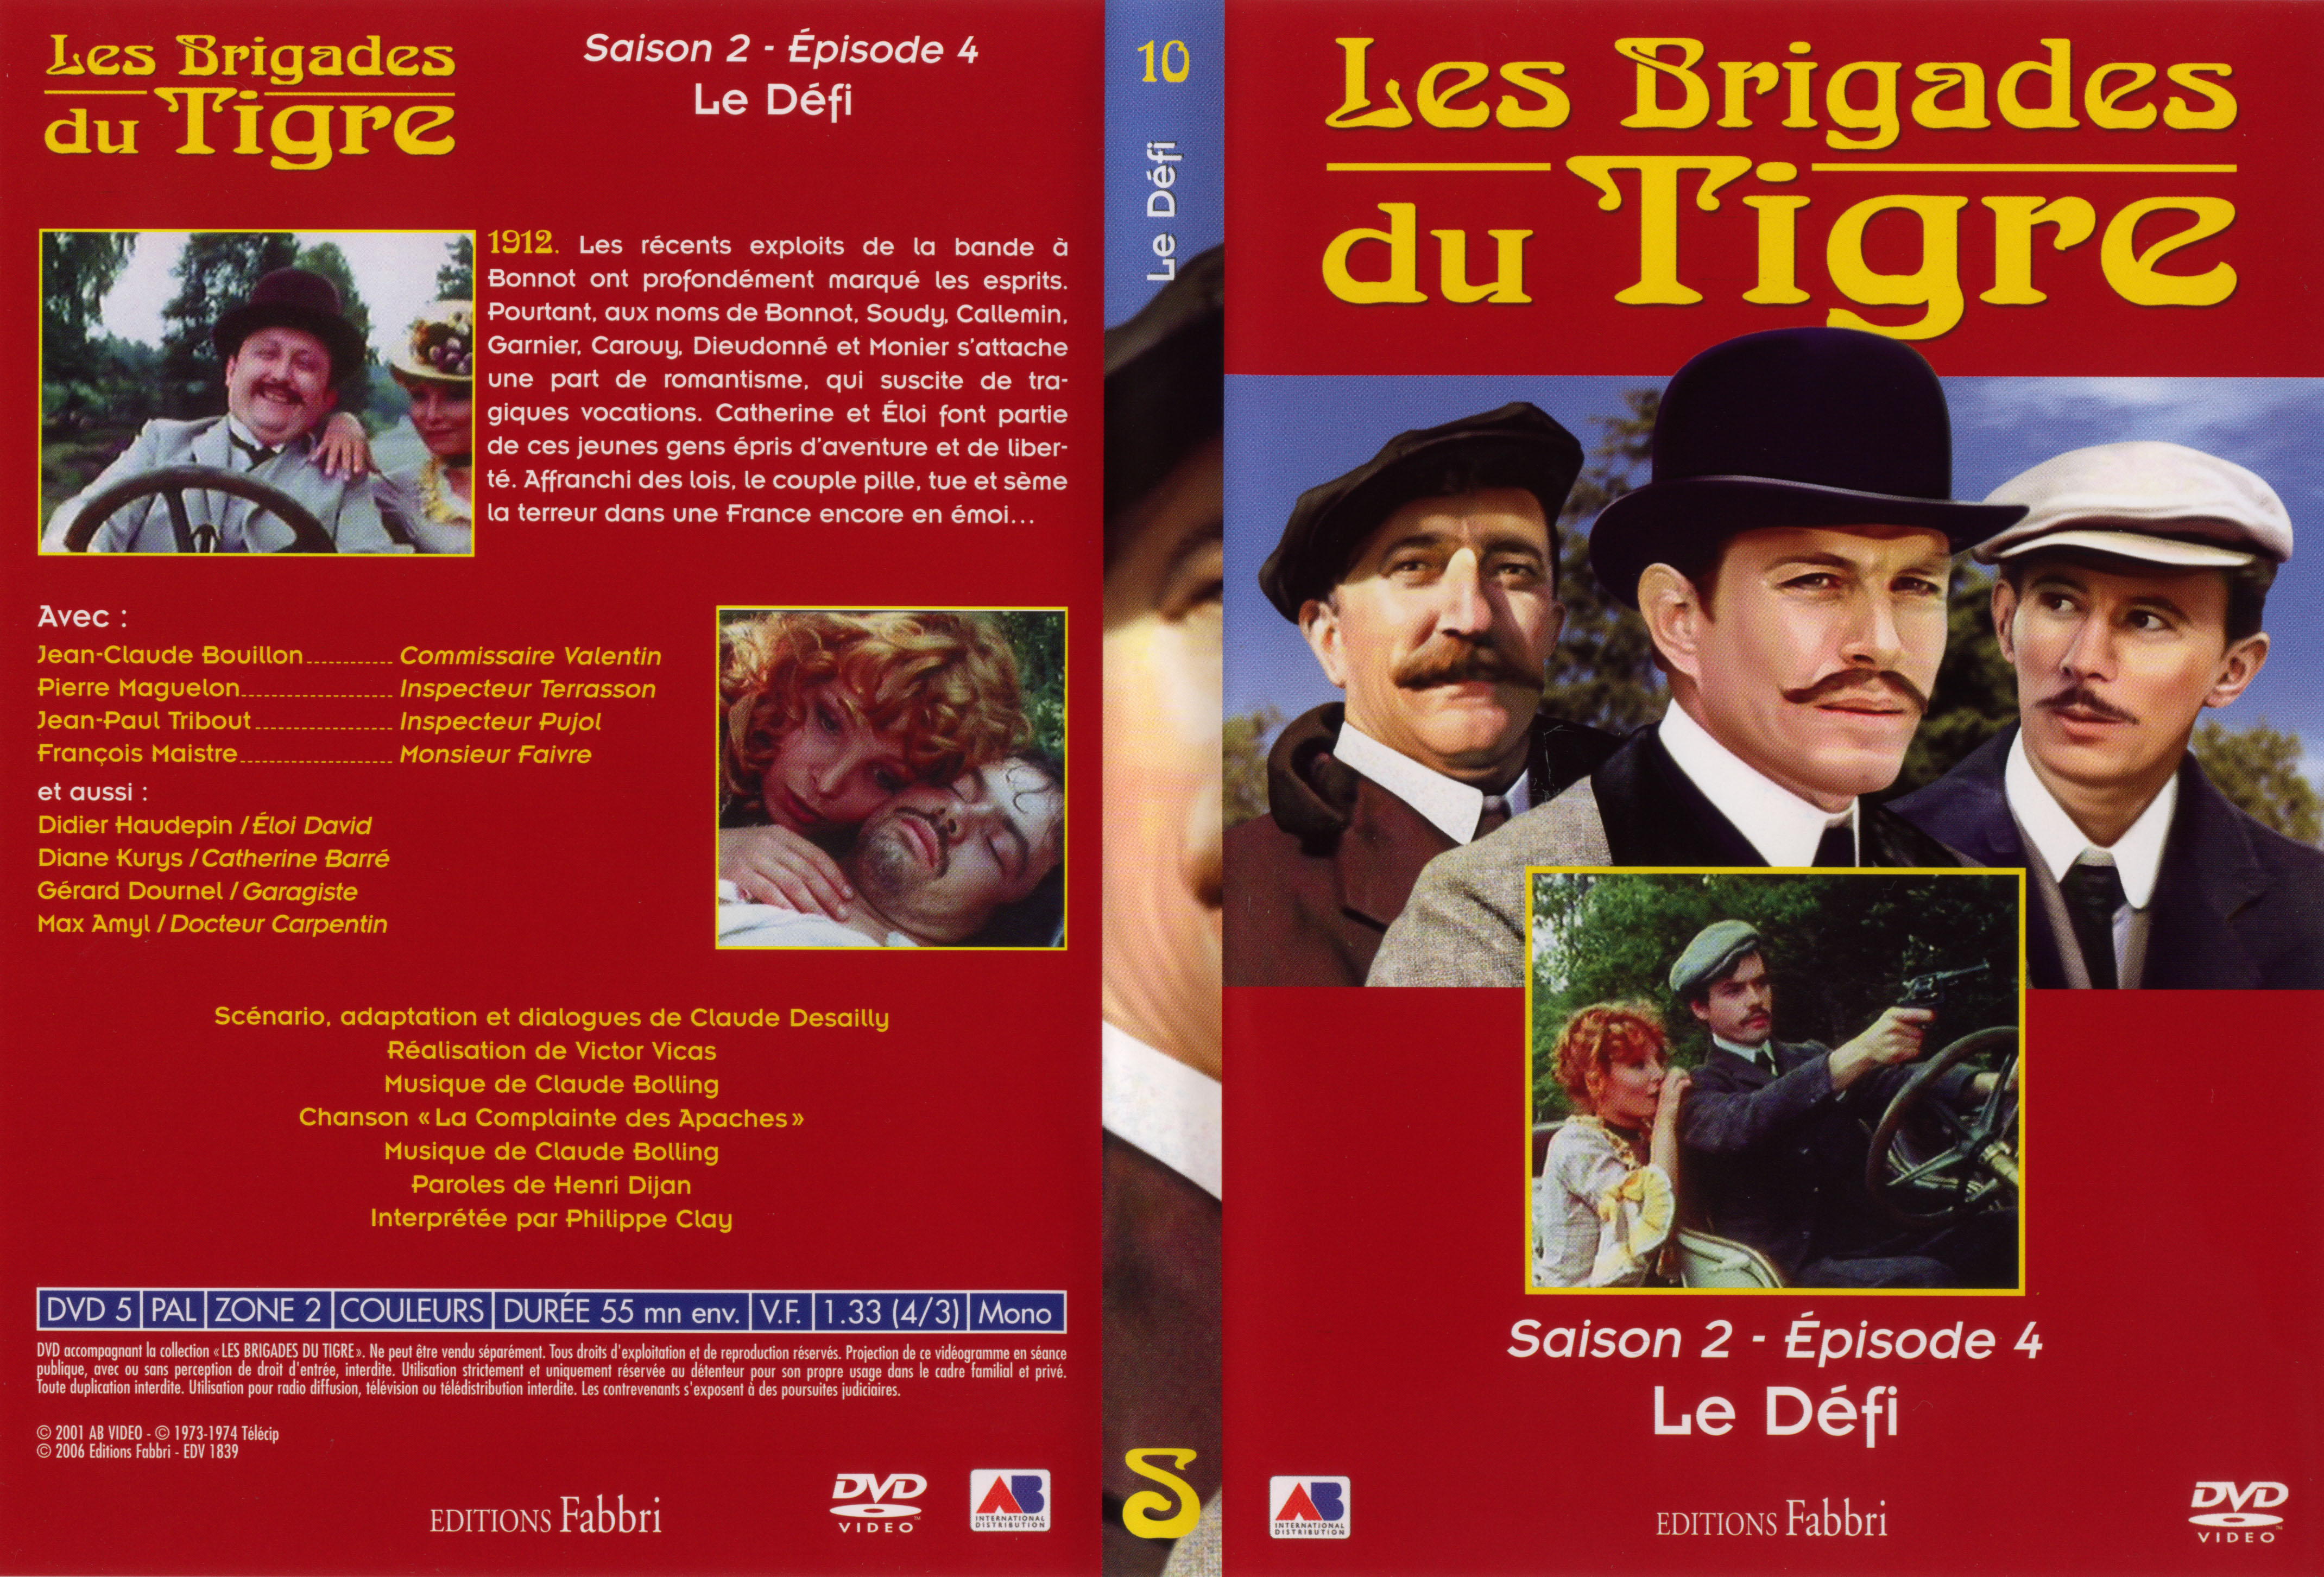 Jaquette DVD Les brigades du tigre saison 2 épisode 4